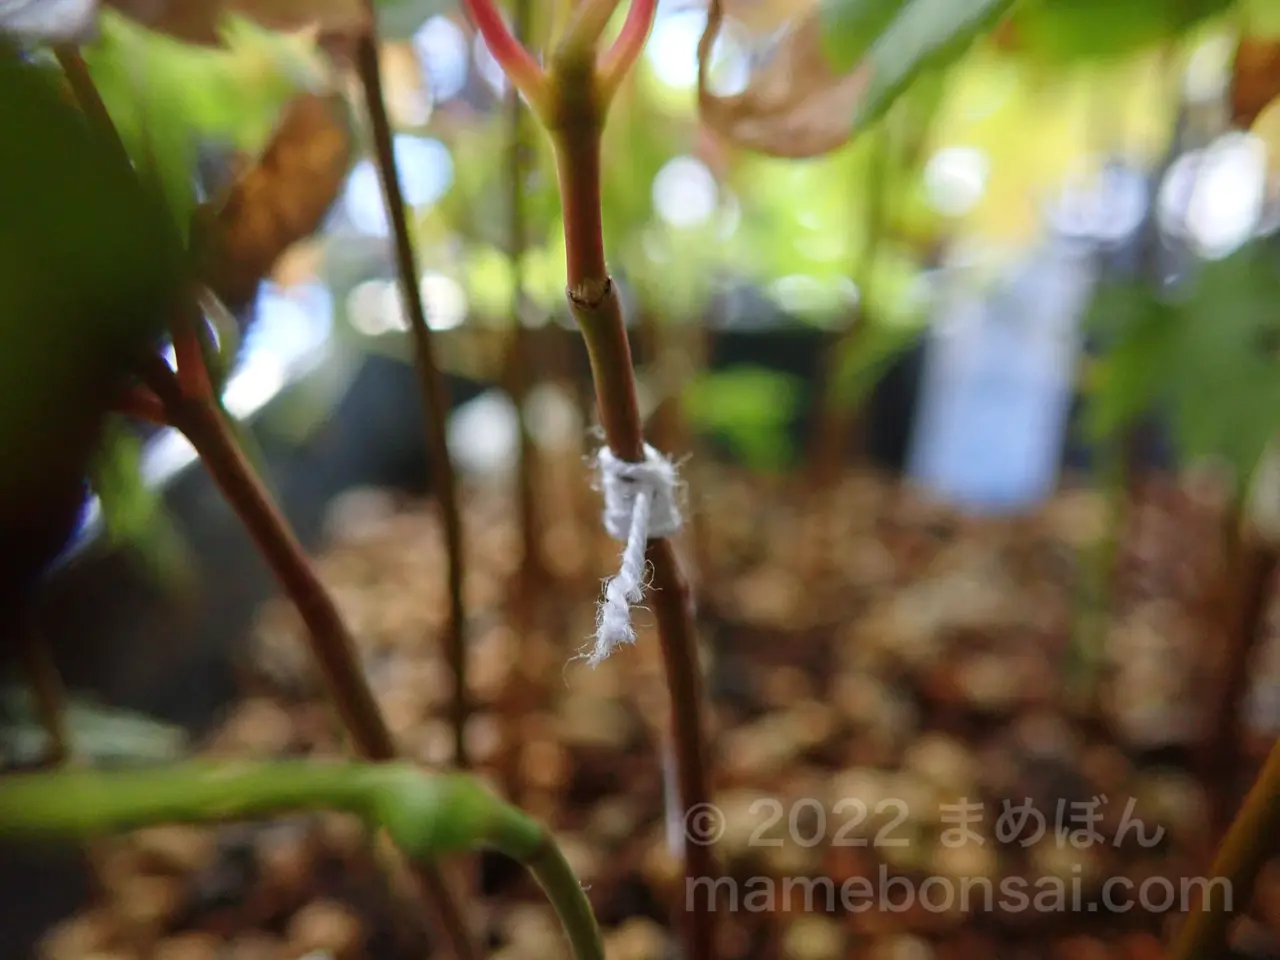 プランターのトウカエデに混じって生えているイロハモミジに木綿糸で印をつける